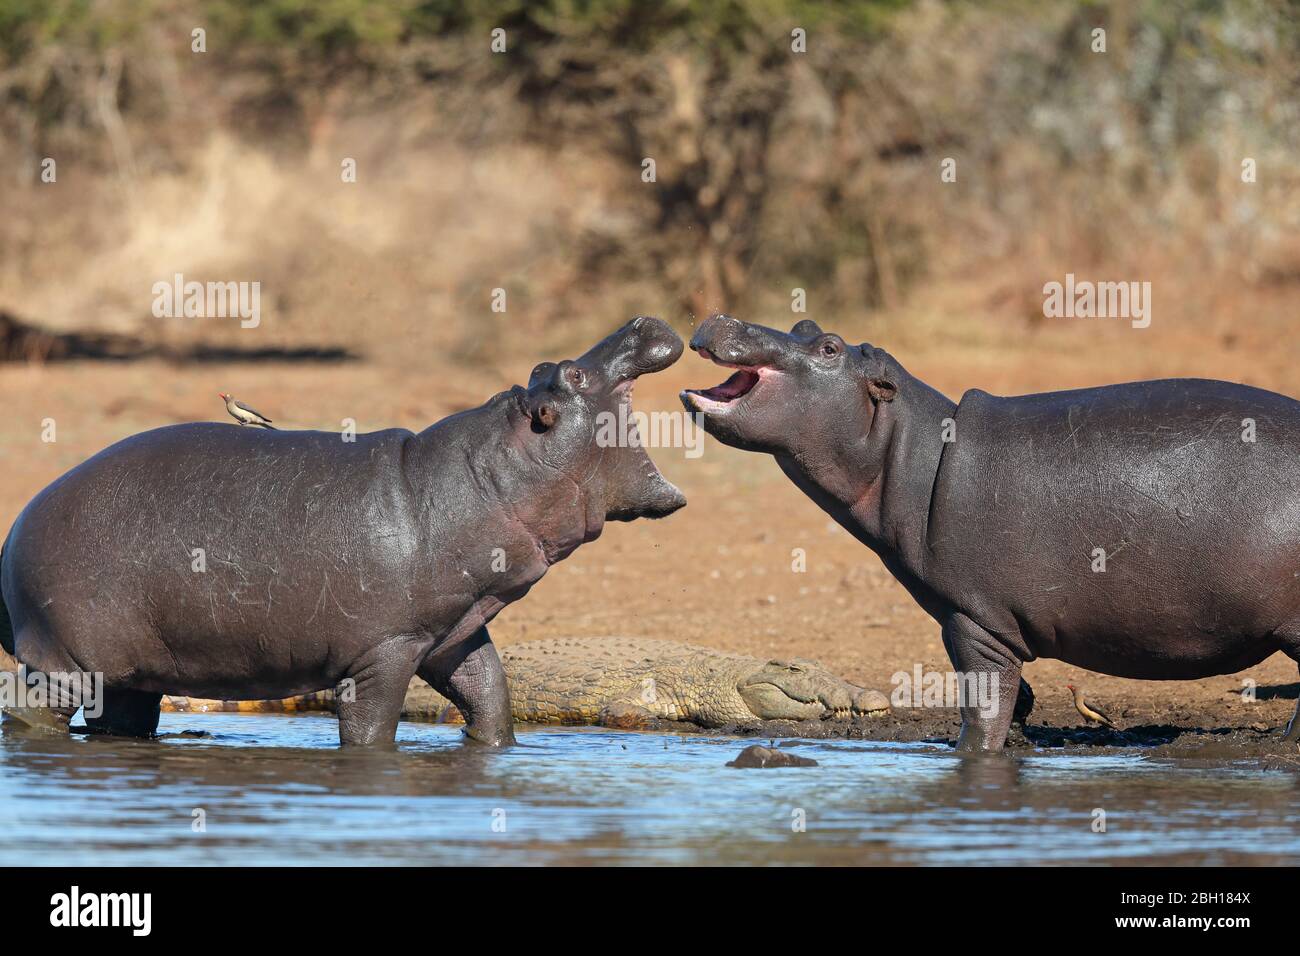 Hipopótamo, hipopótamo, hipopótamo común (hipopótamo anfibio), comportamiento agresivo de dos hipopótamos en la costa, Sudáfrica, Lowveld, Parque Nacional Krupeger Foto de stock